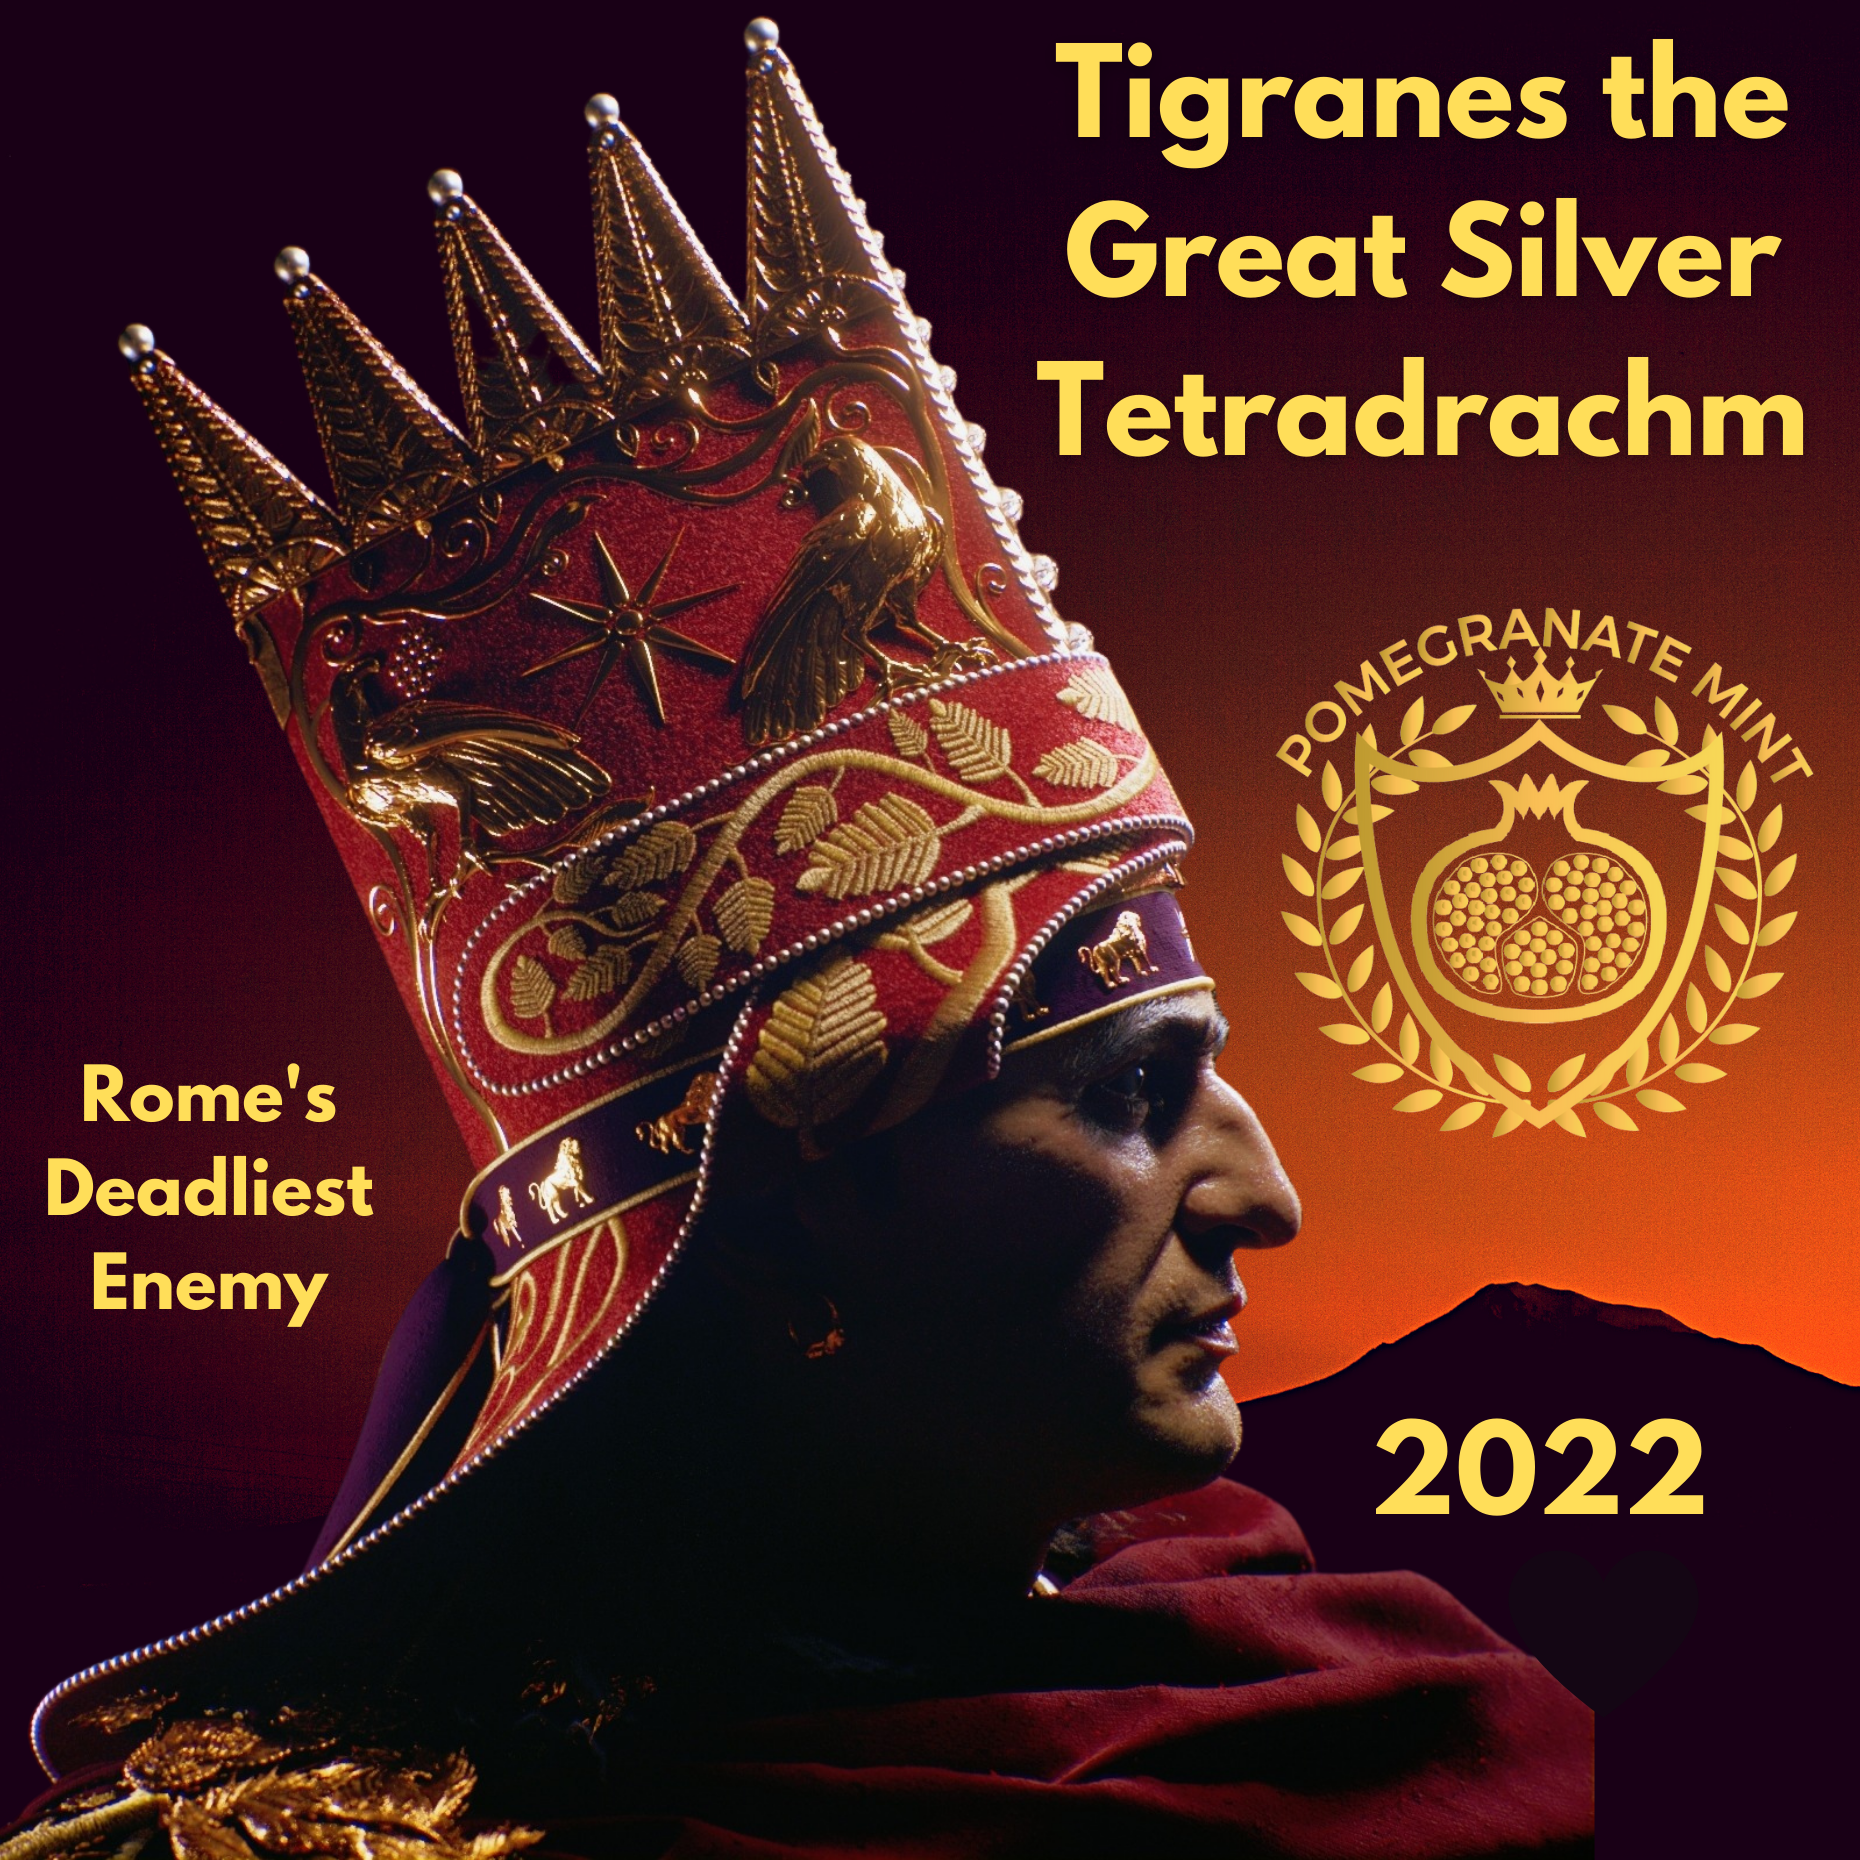 Year of the Tigran